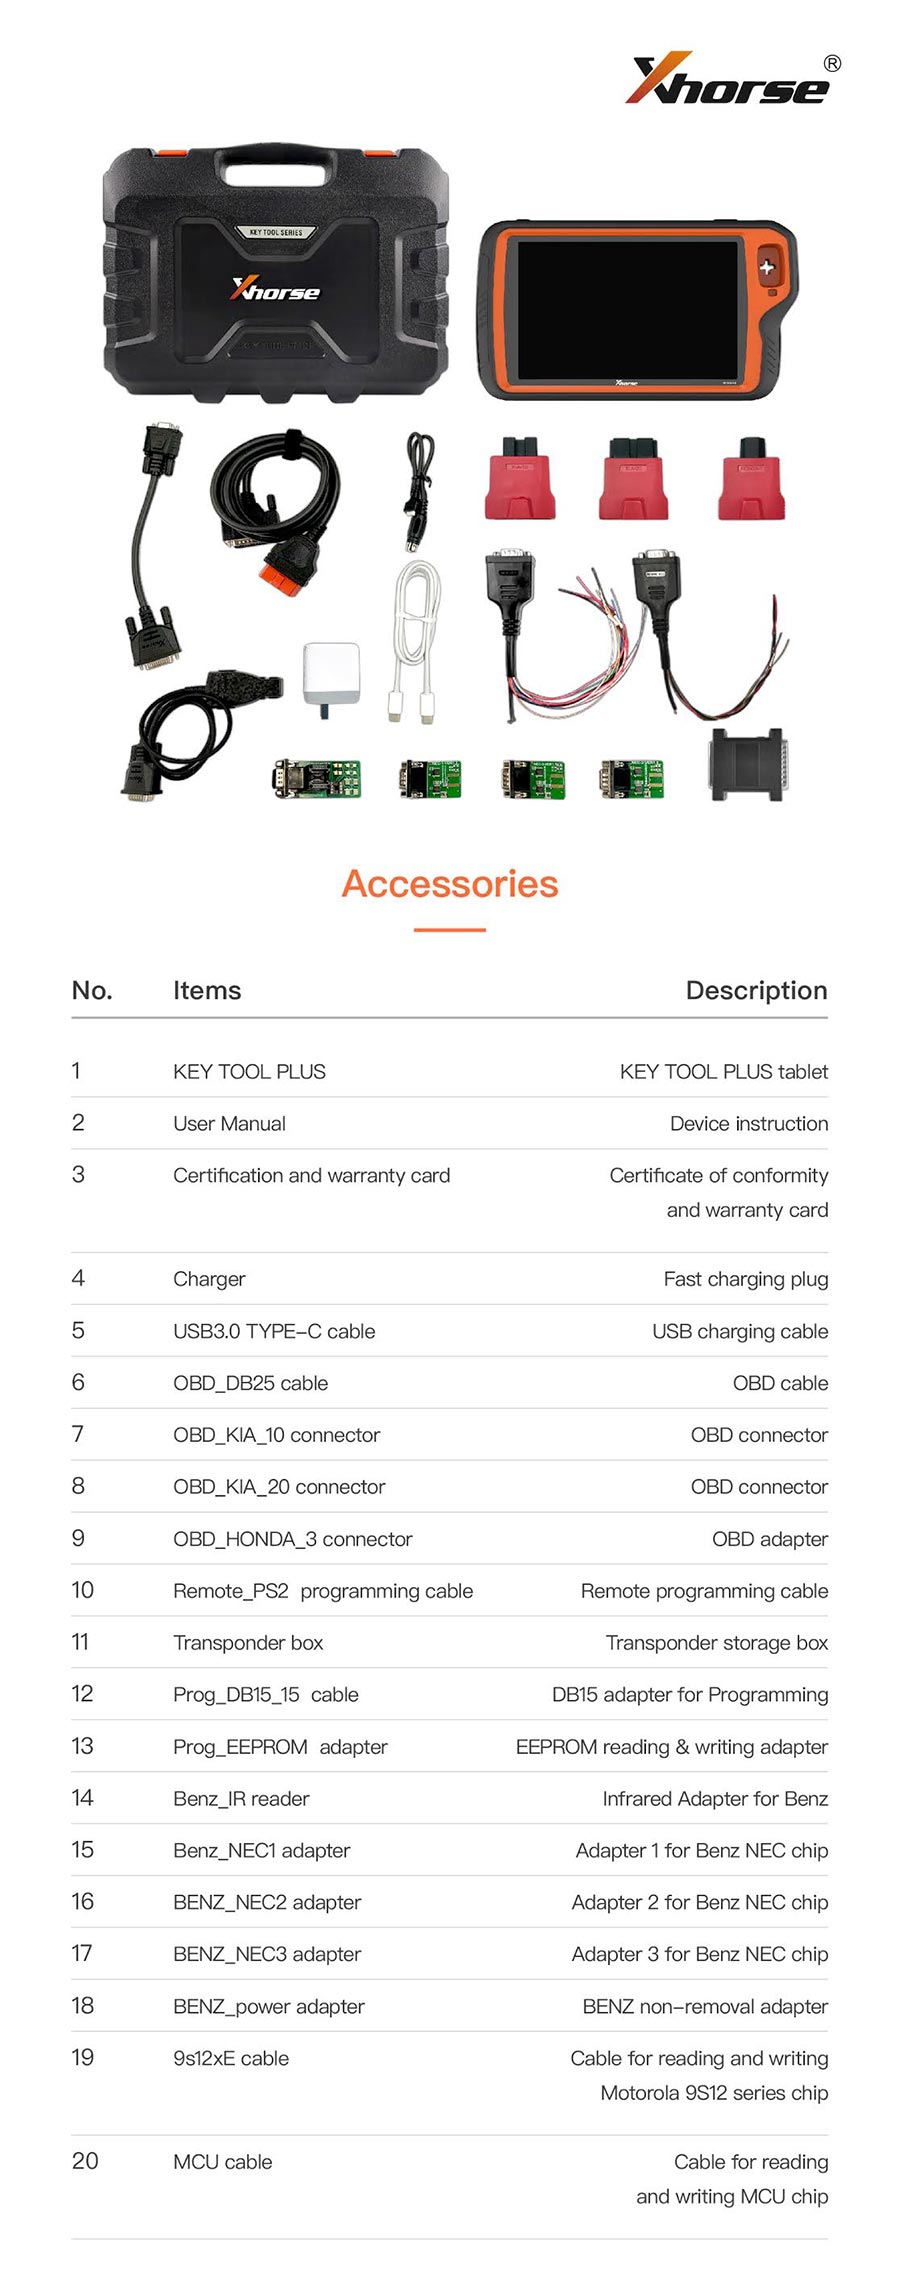 Xhorse VVDI Key Tool Plus Pad packing list